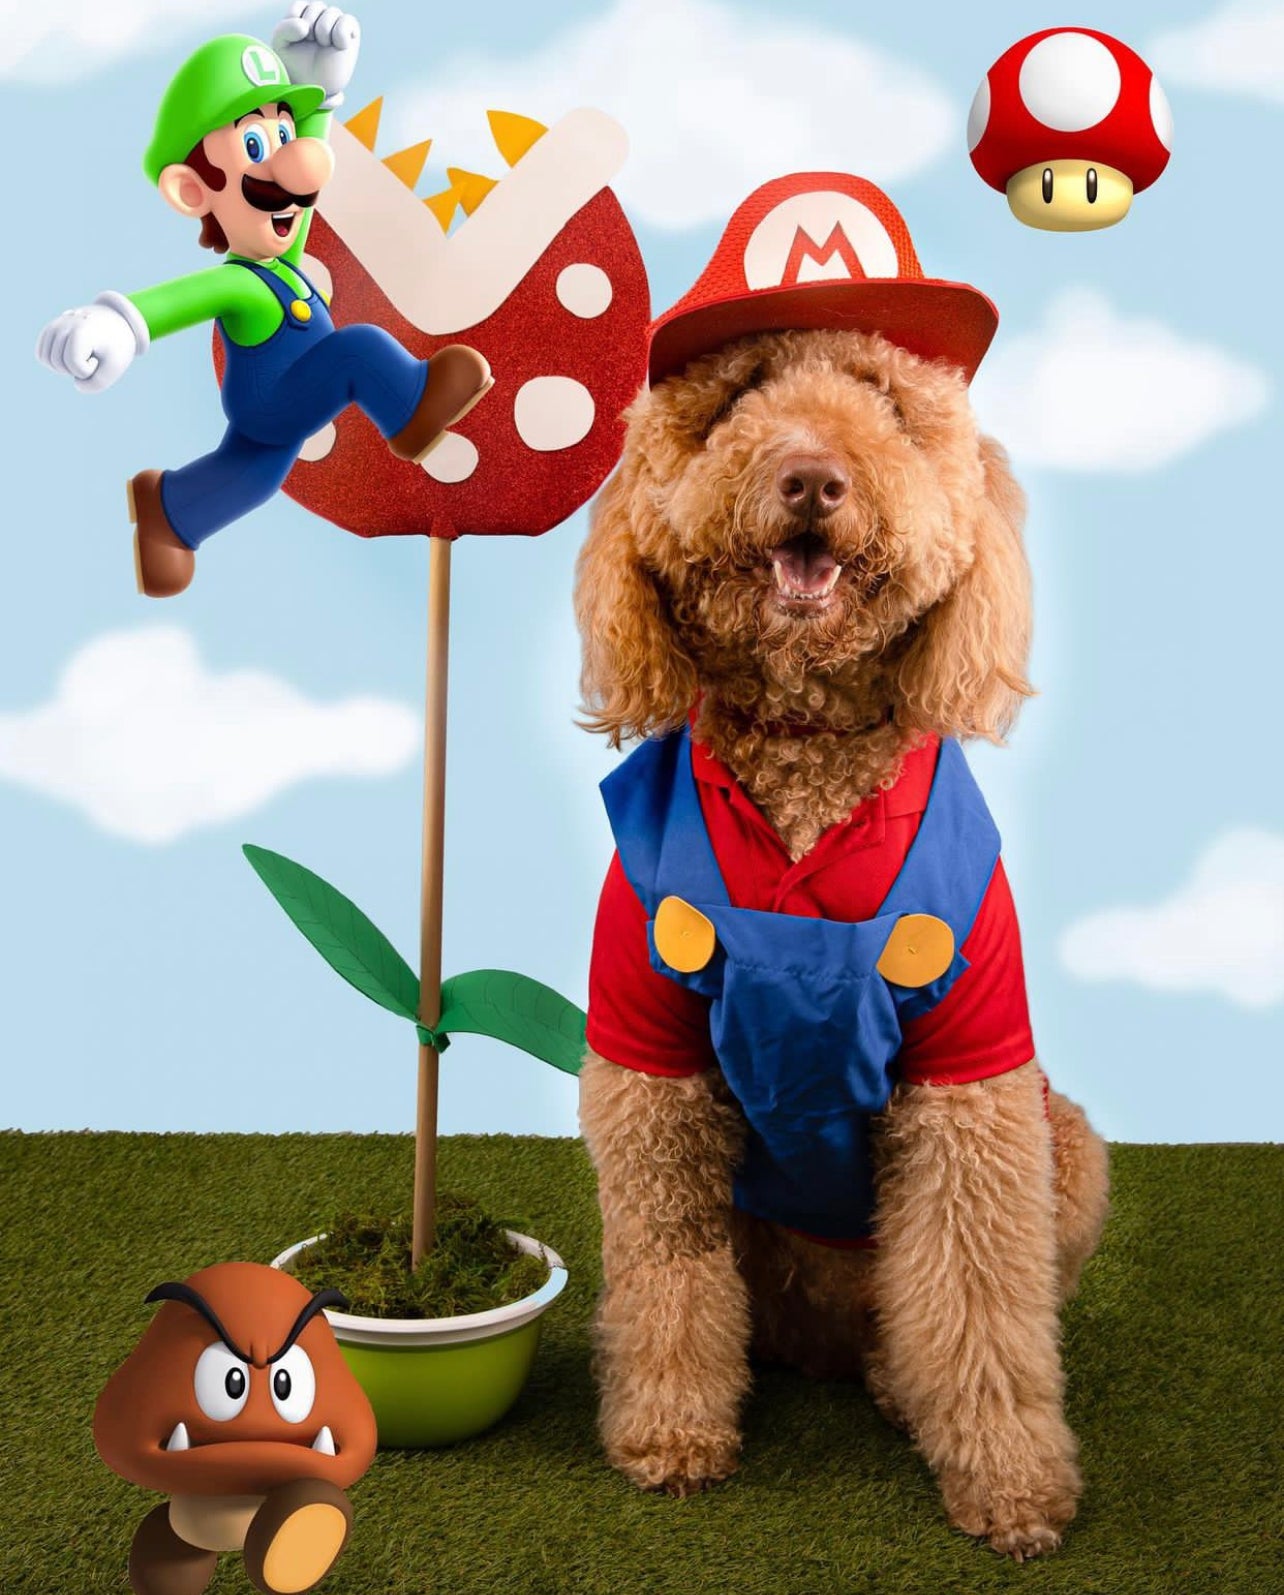 Mario Pet Costume